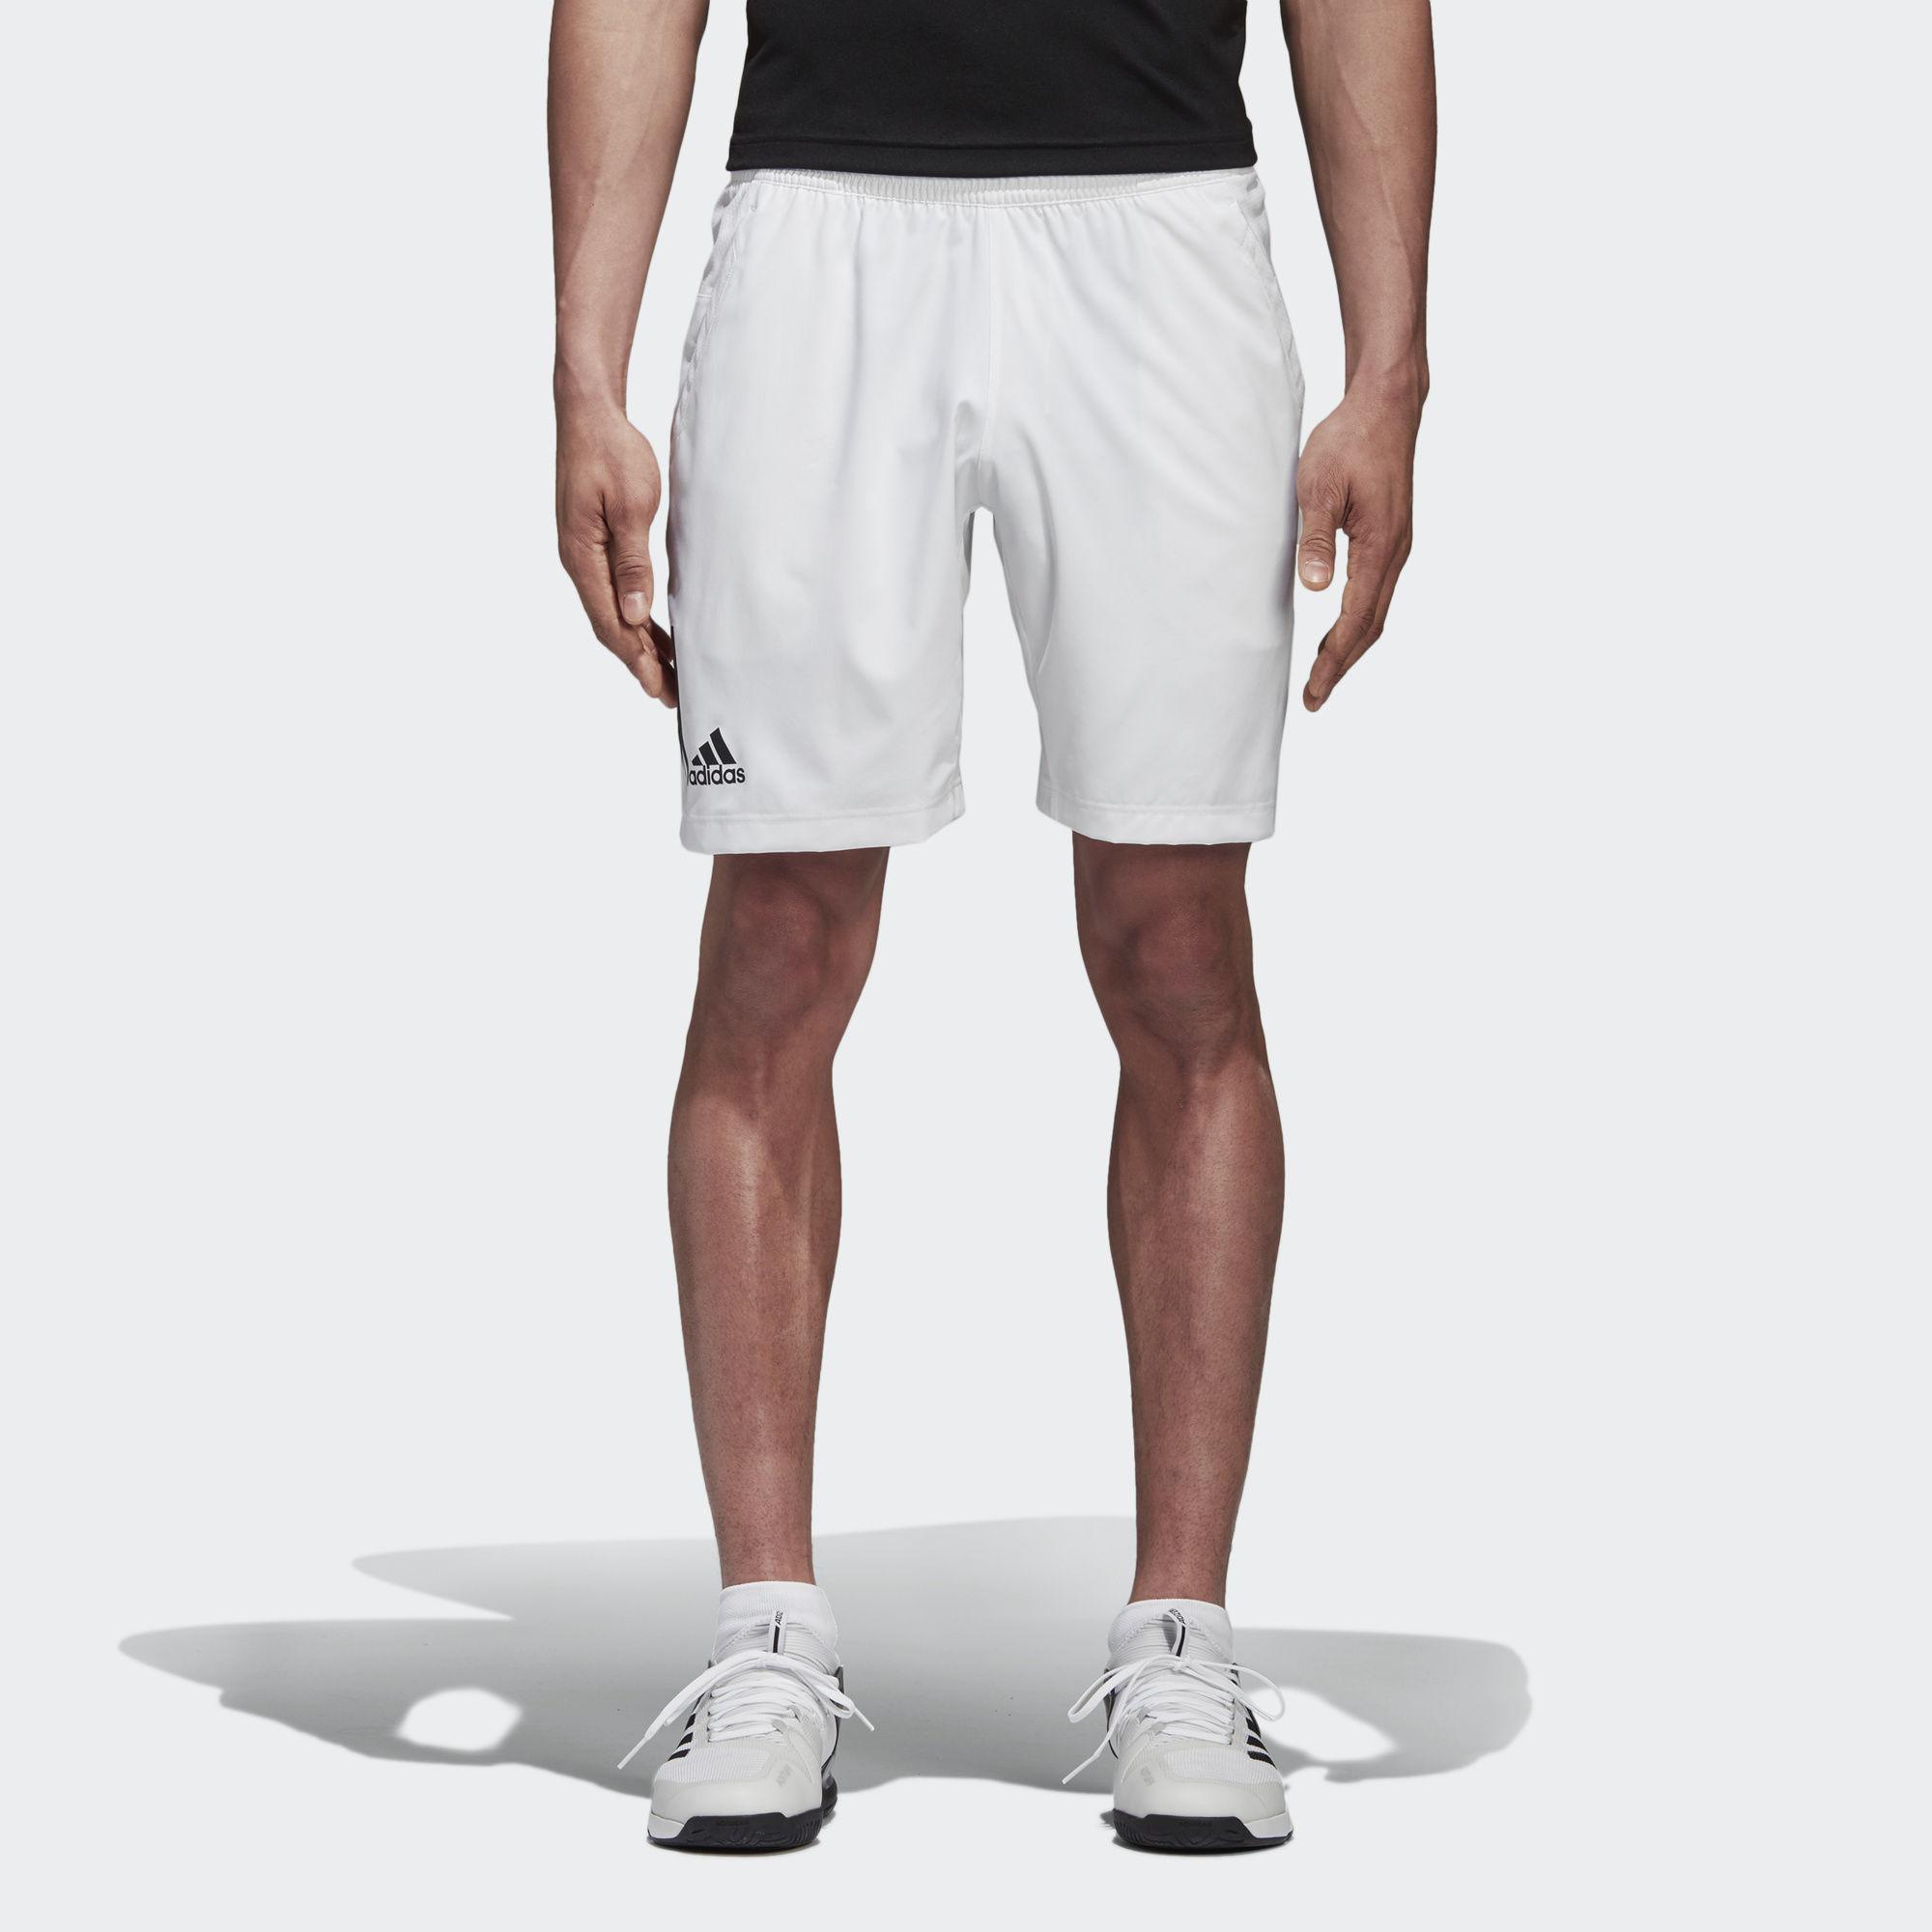 Adidas Mens Club Tennis Shorts - White/Black - Tennisnuts.com